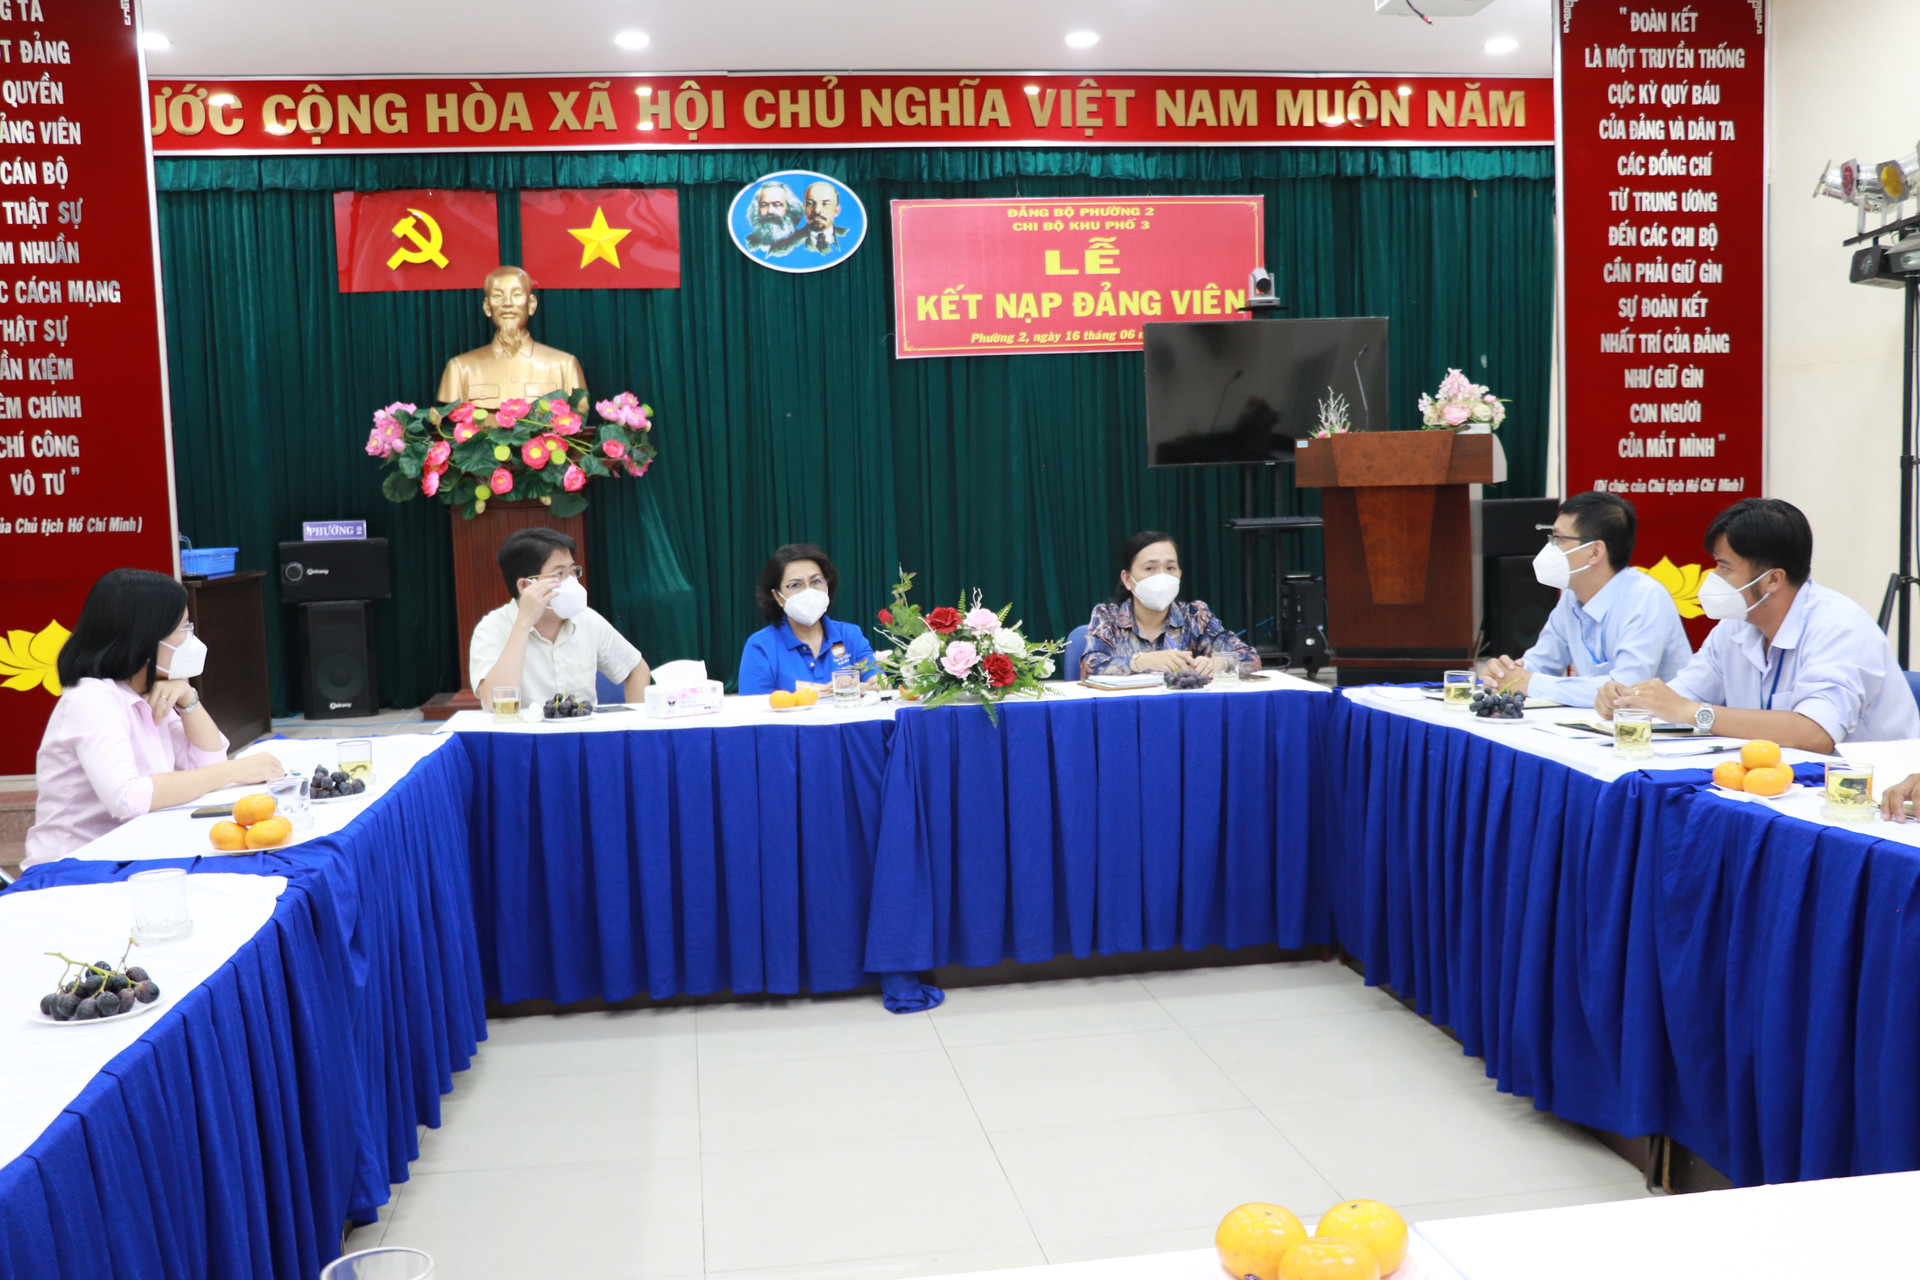 Chủ tịch Ủy ban MTTQ Việt Nam TP HCM làm việc với Ban chỉ đạo phường 2, quận Phú Nhuận.